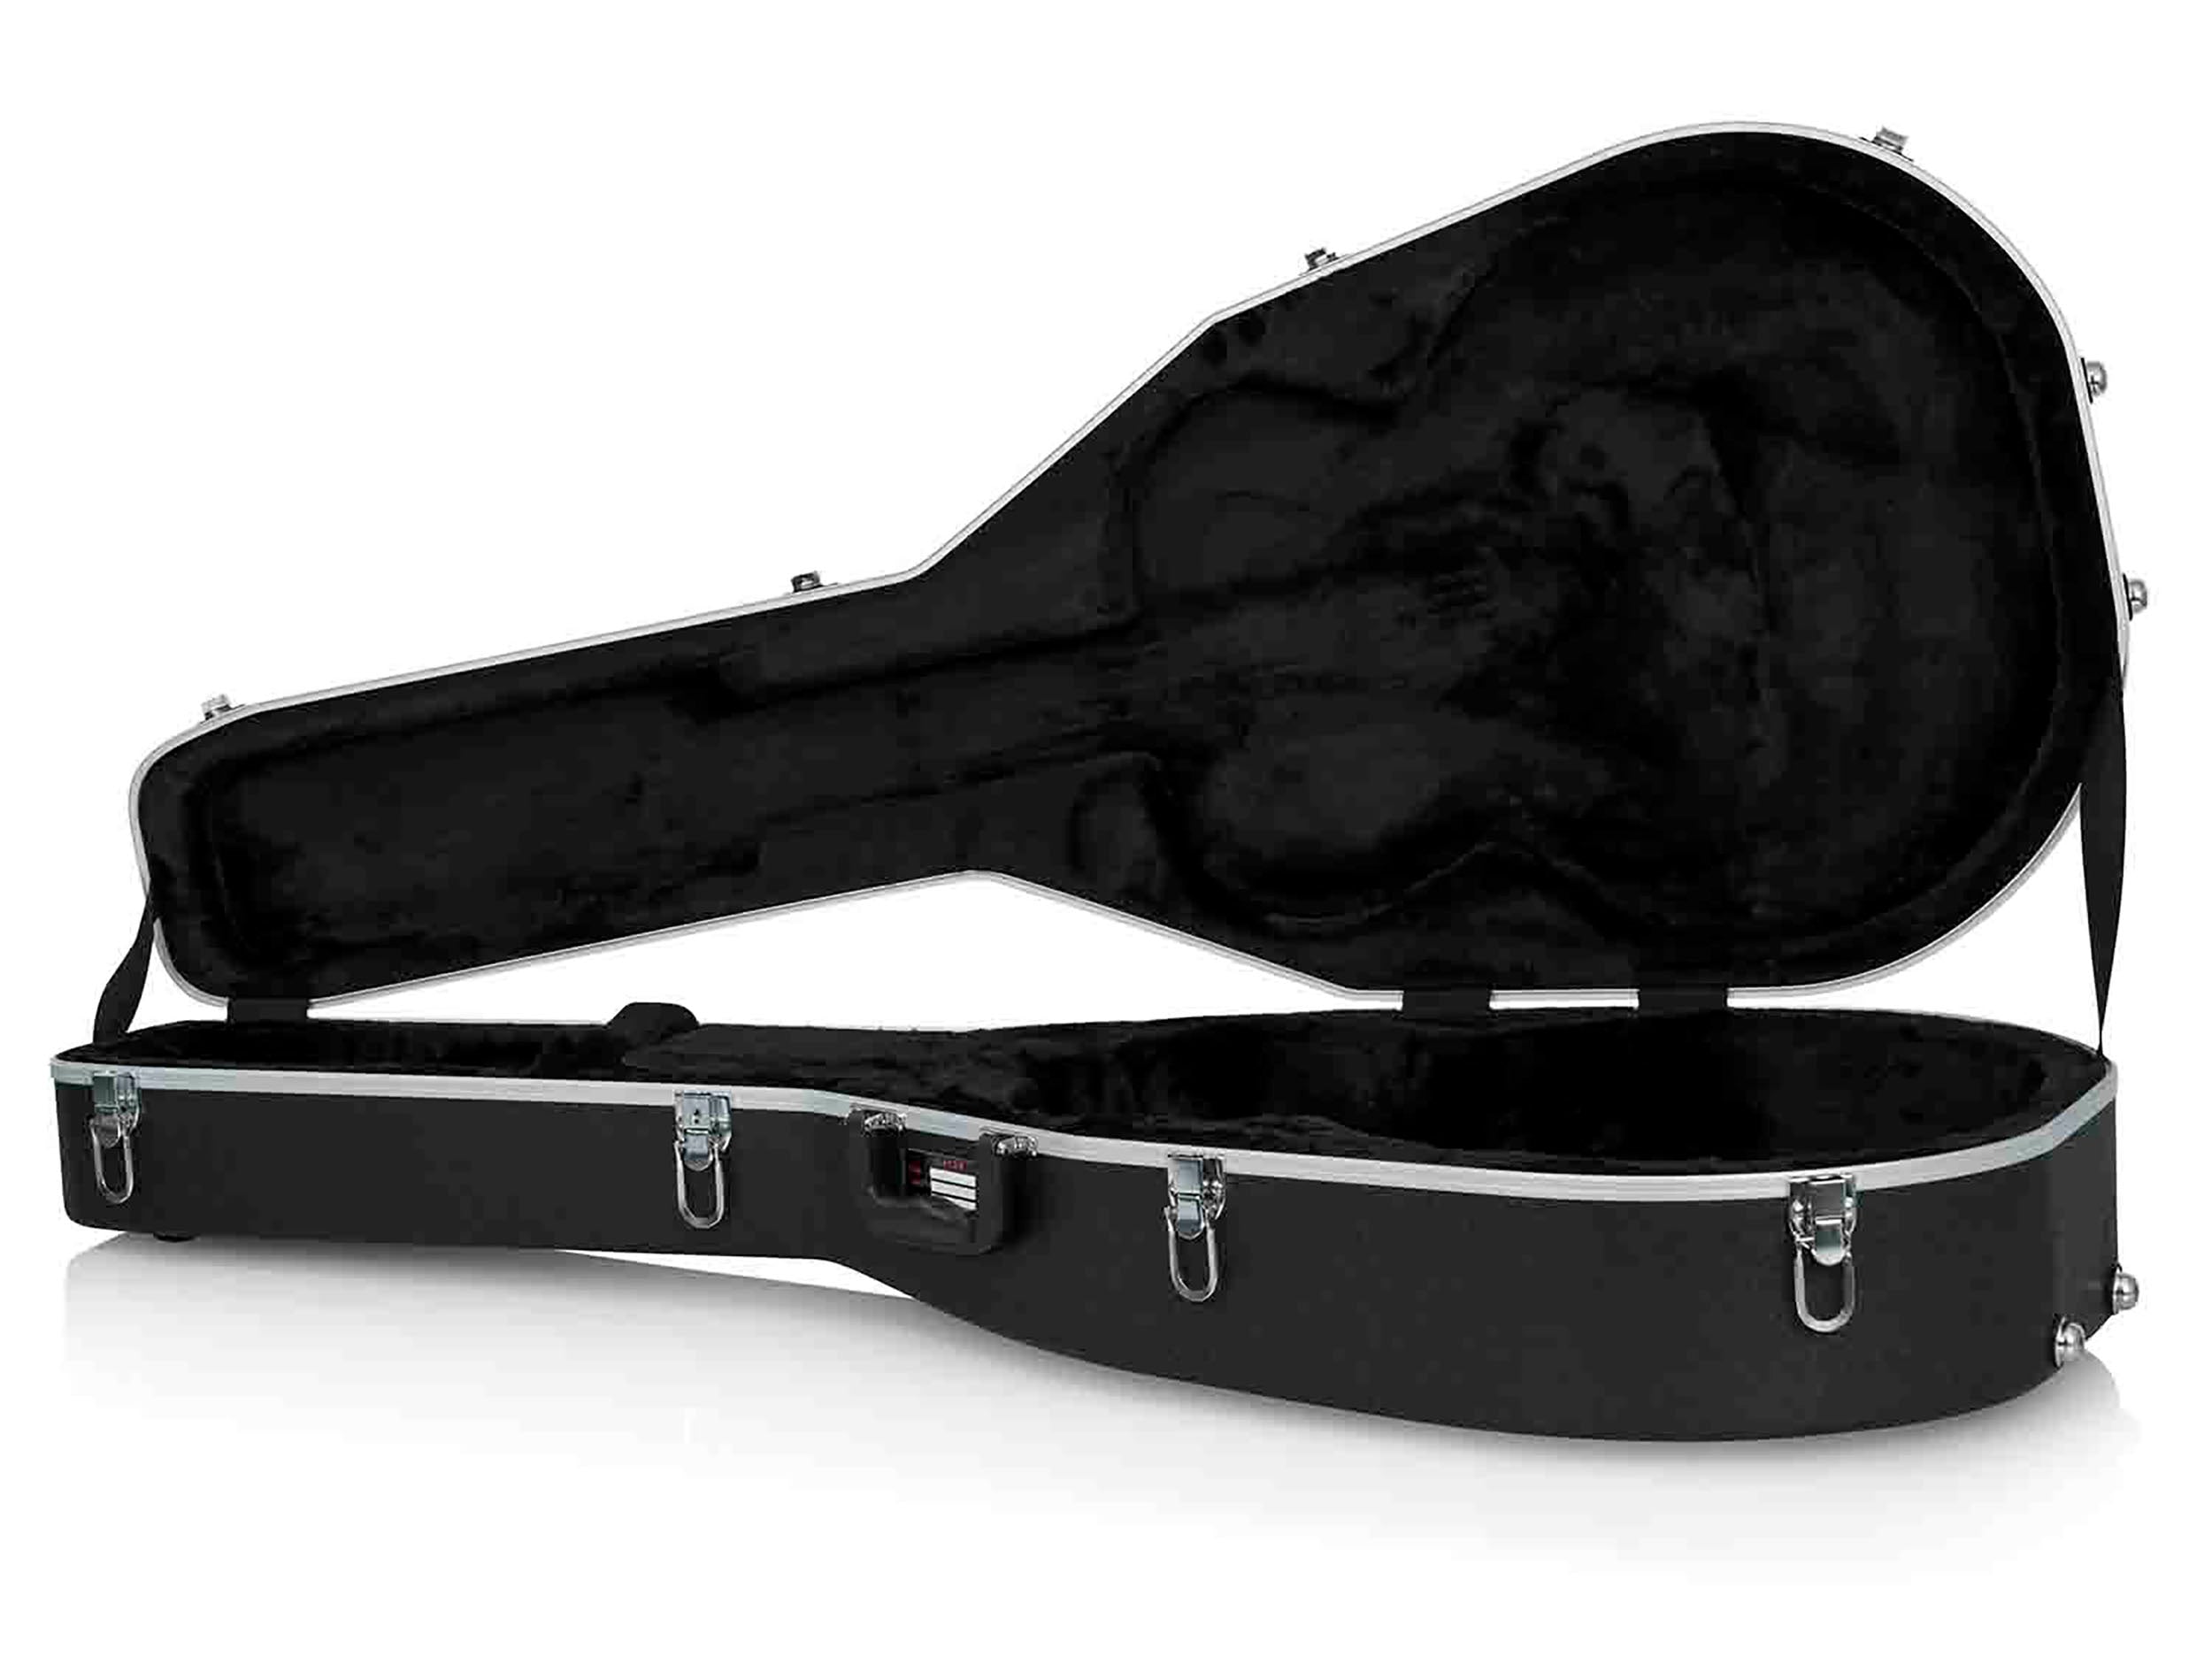 Gator Cases GC-JUMBO Deluxe Molded Guitar Case for Jumbo Acoustic Guitars